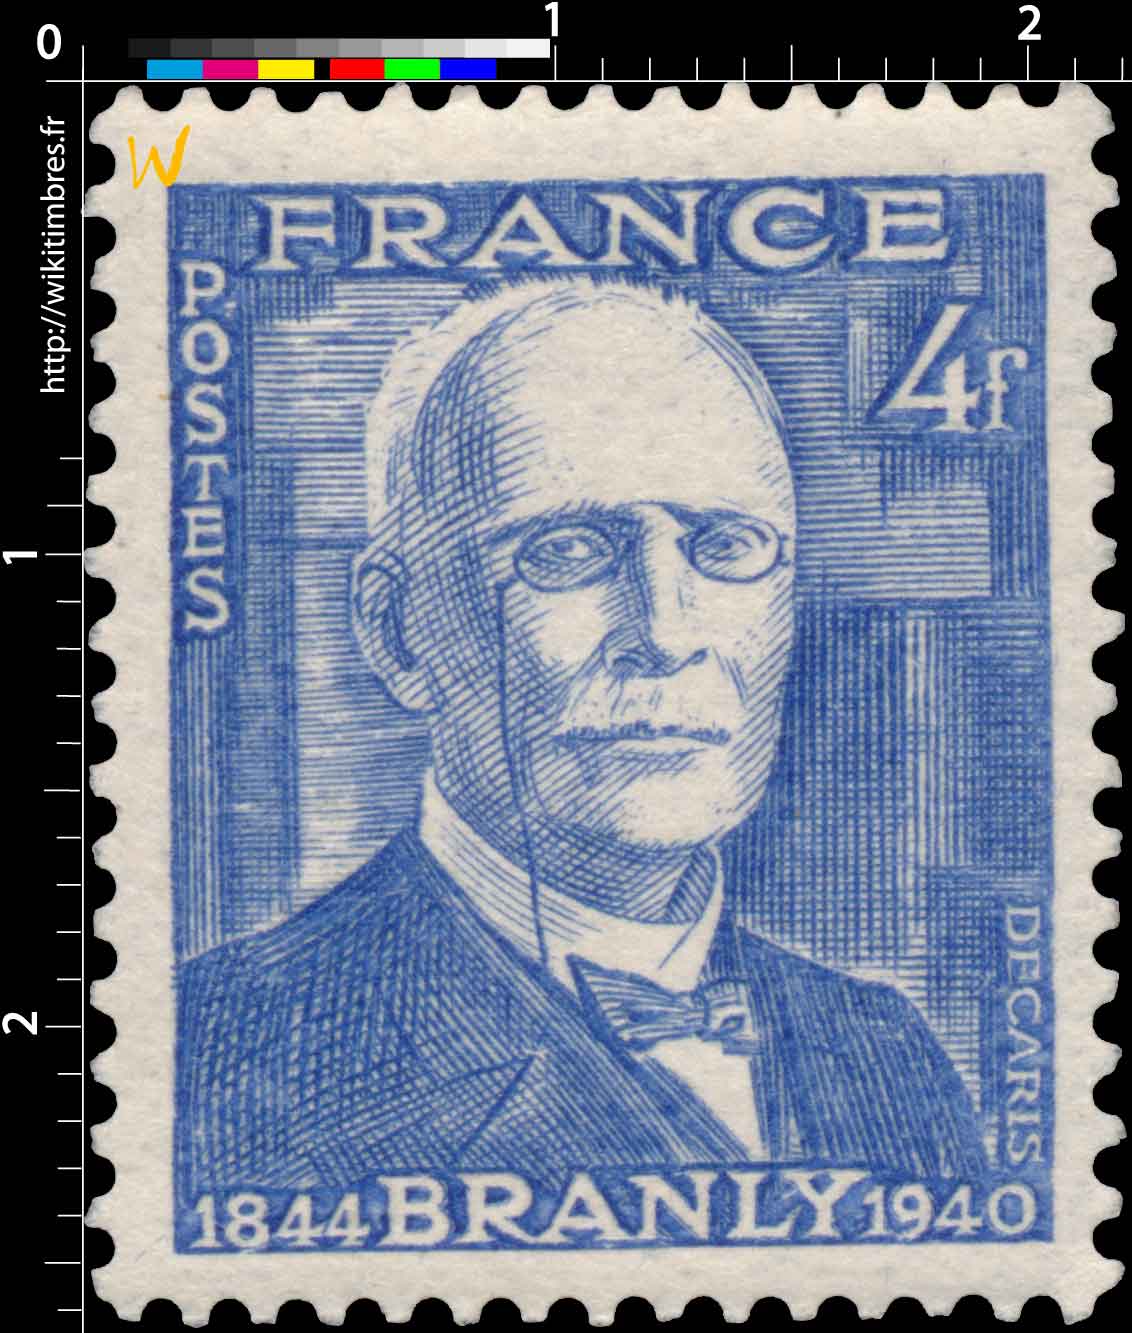 BRANLY 1844-1940